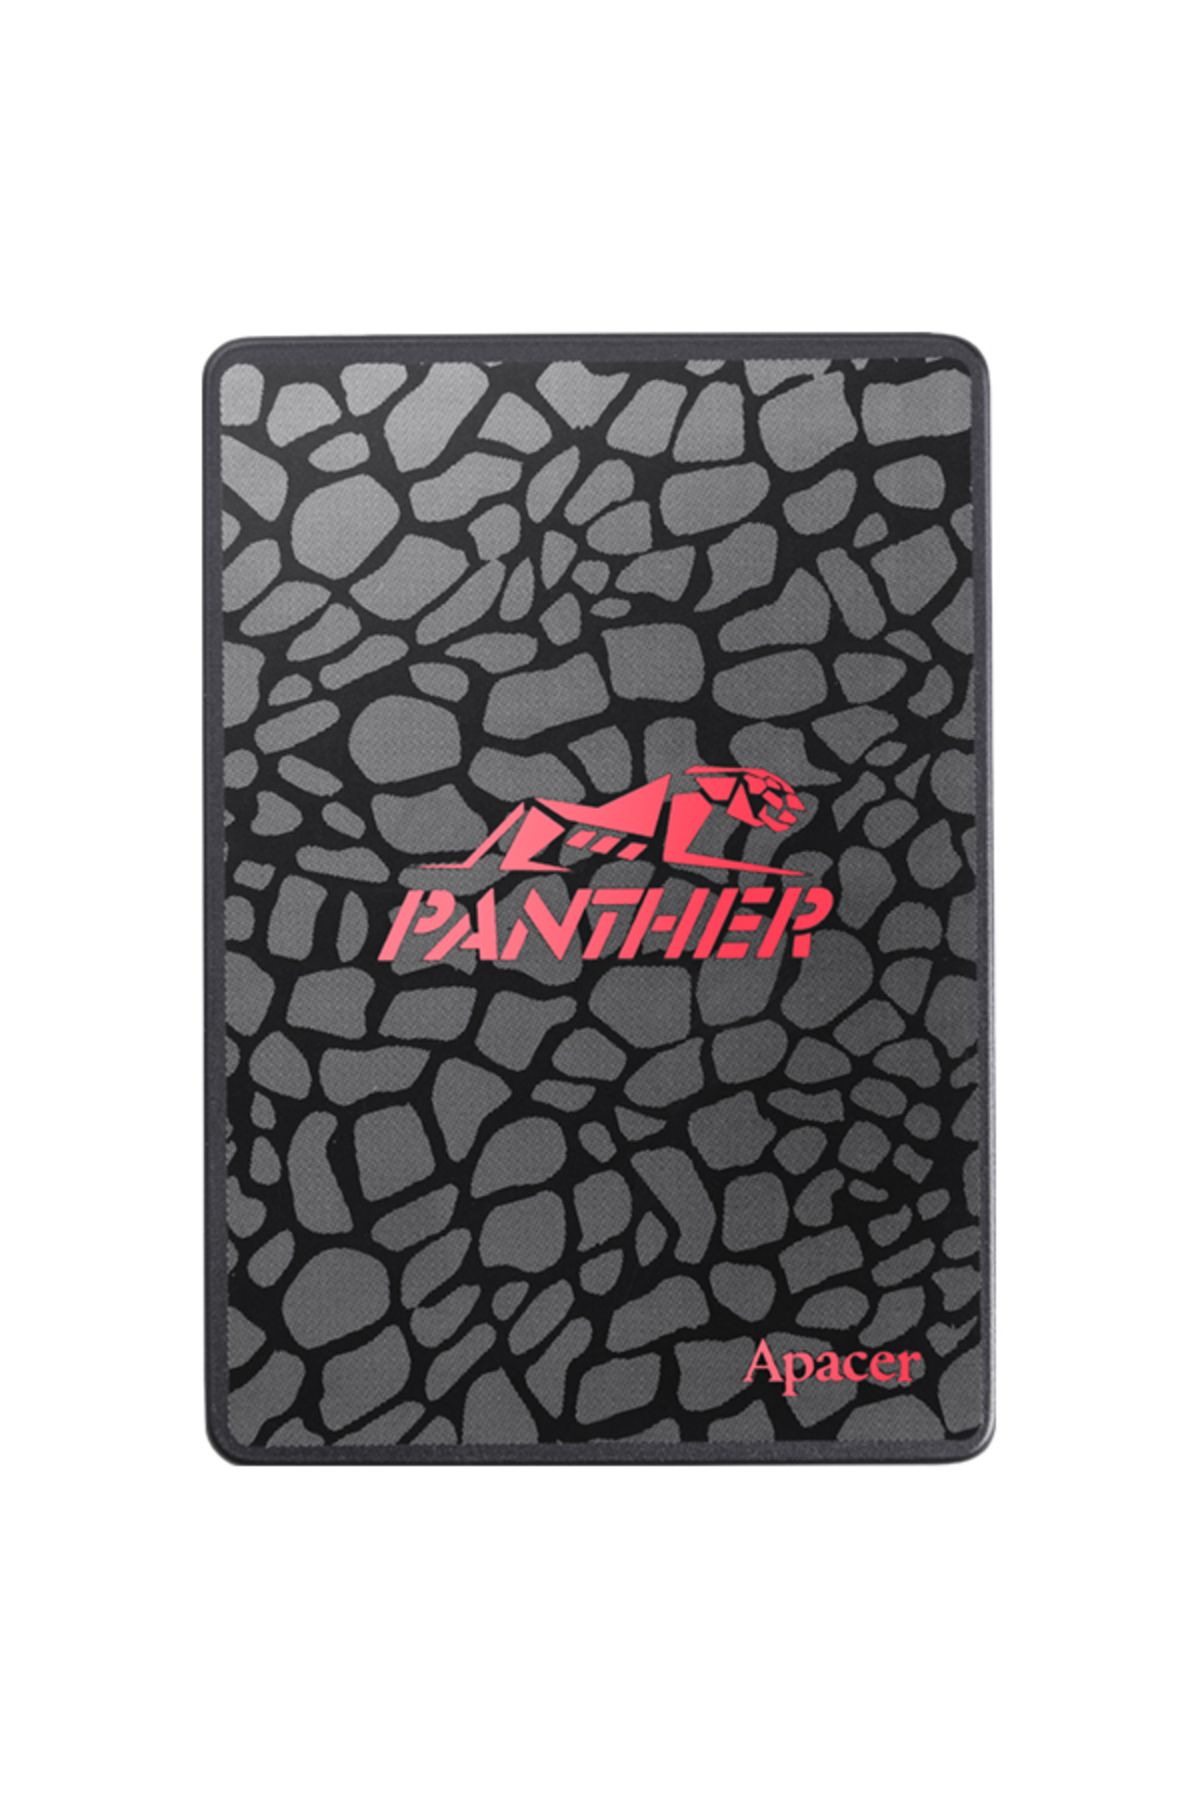 Apacer Panther As350 256gb 560/540mb/s 2.5" Sata3 Ssd Disk (AP256GAS350-1)